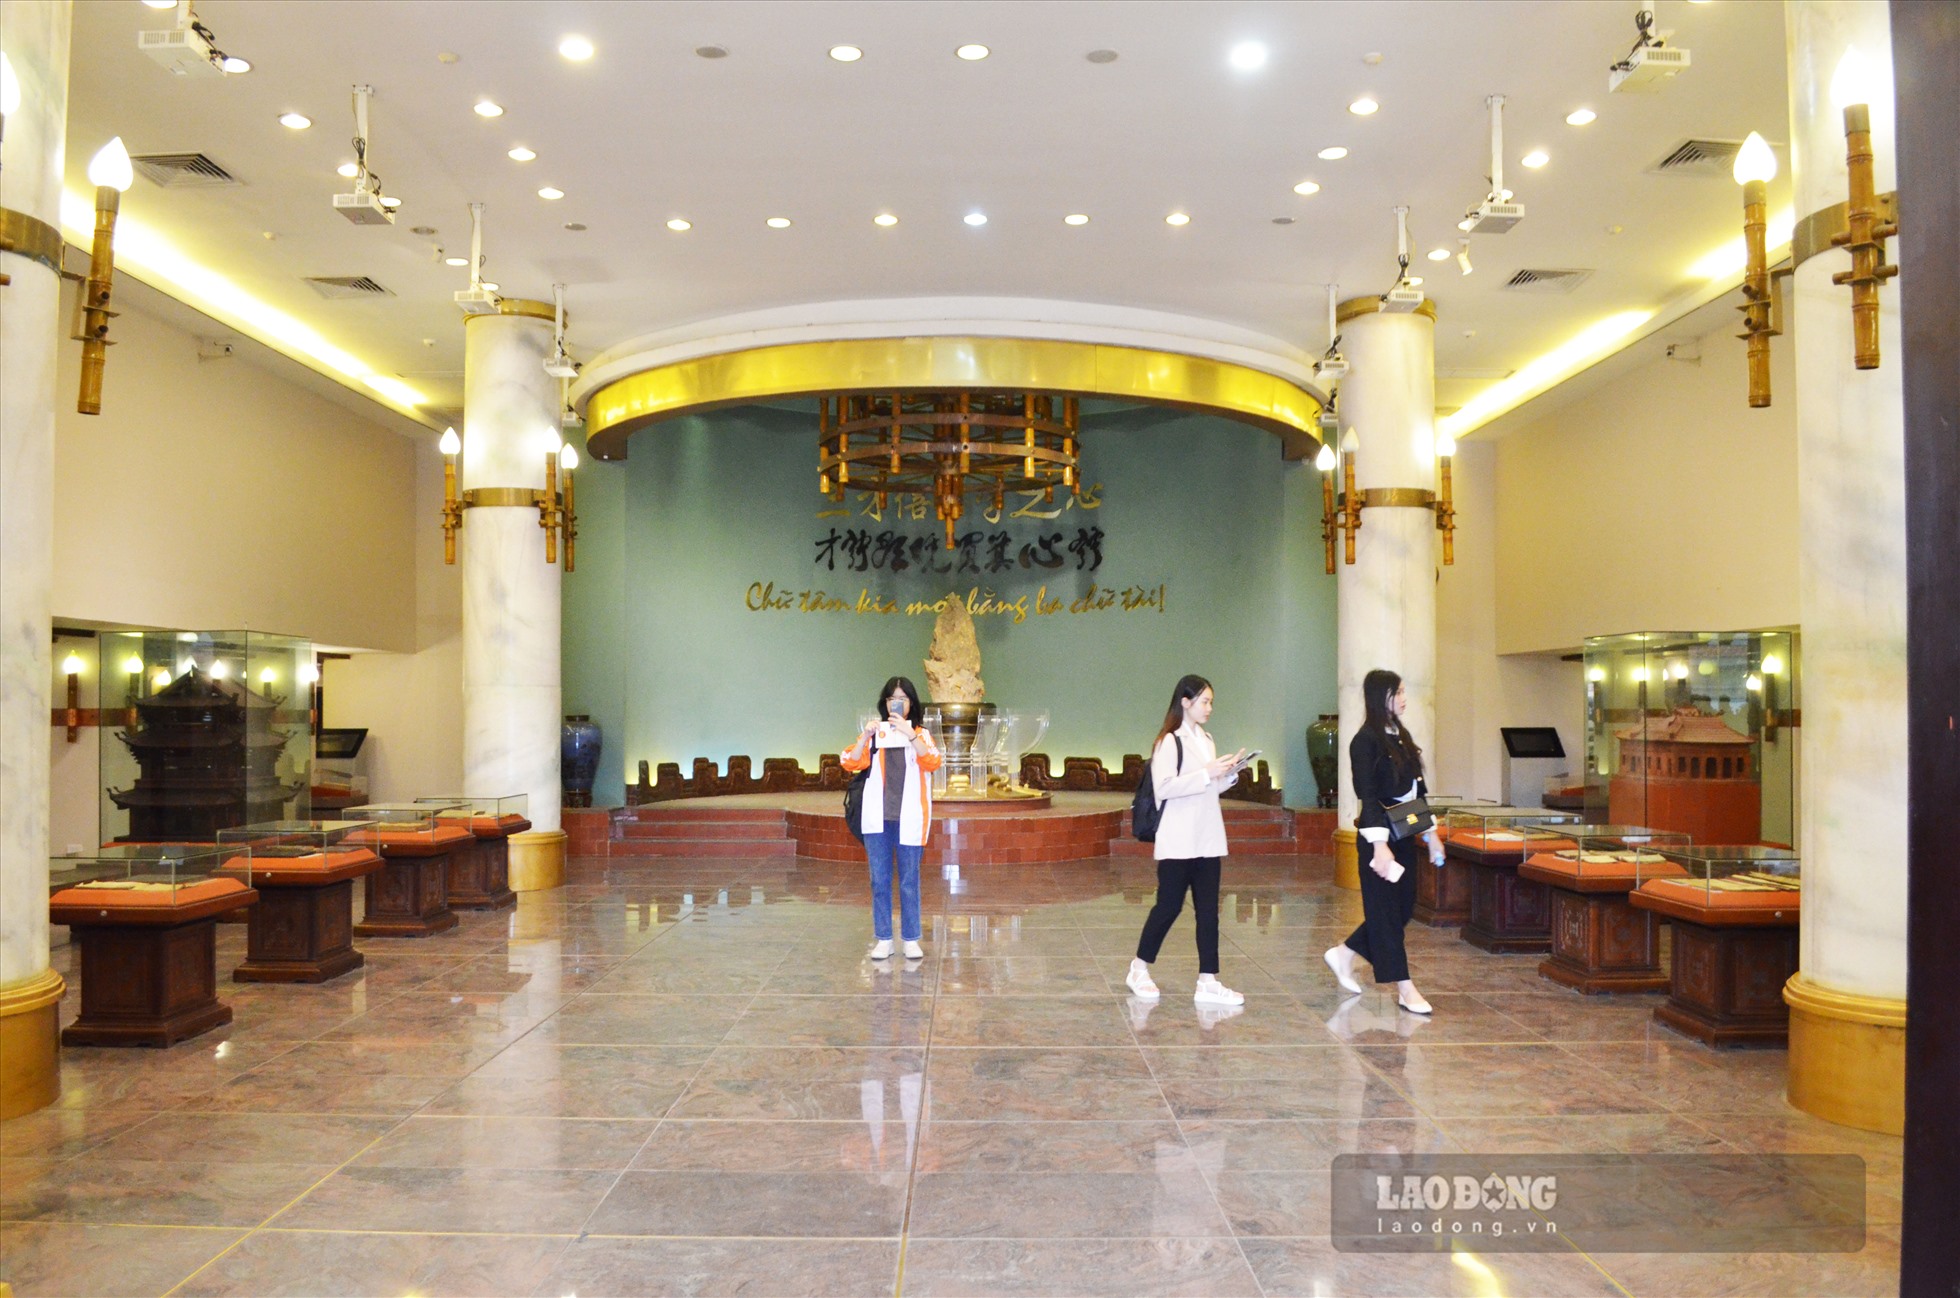 Bảo tàng Văn học Việt Nam được thành lập ngày 8.11.2011 theo Quyết định số 1987/QĐ-TTg của Thủ tướng Chính phủ. Trải qua quá trình sưu tầm và trưng bày đến ngày 26.6.2015, Bảo tàng chính thức mở cửa đón khách thăm quan.